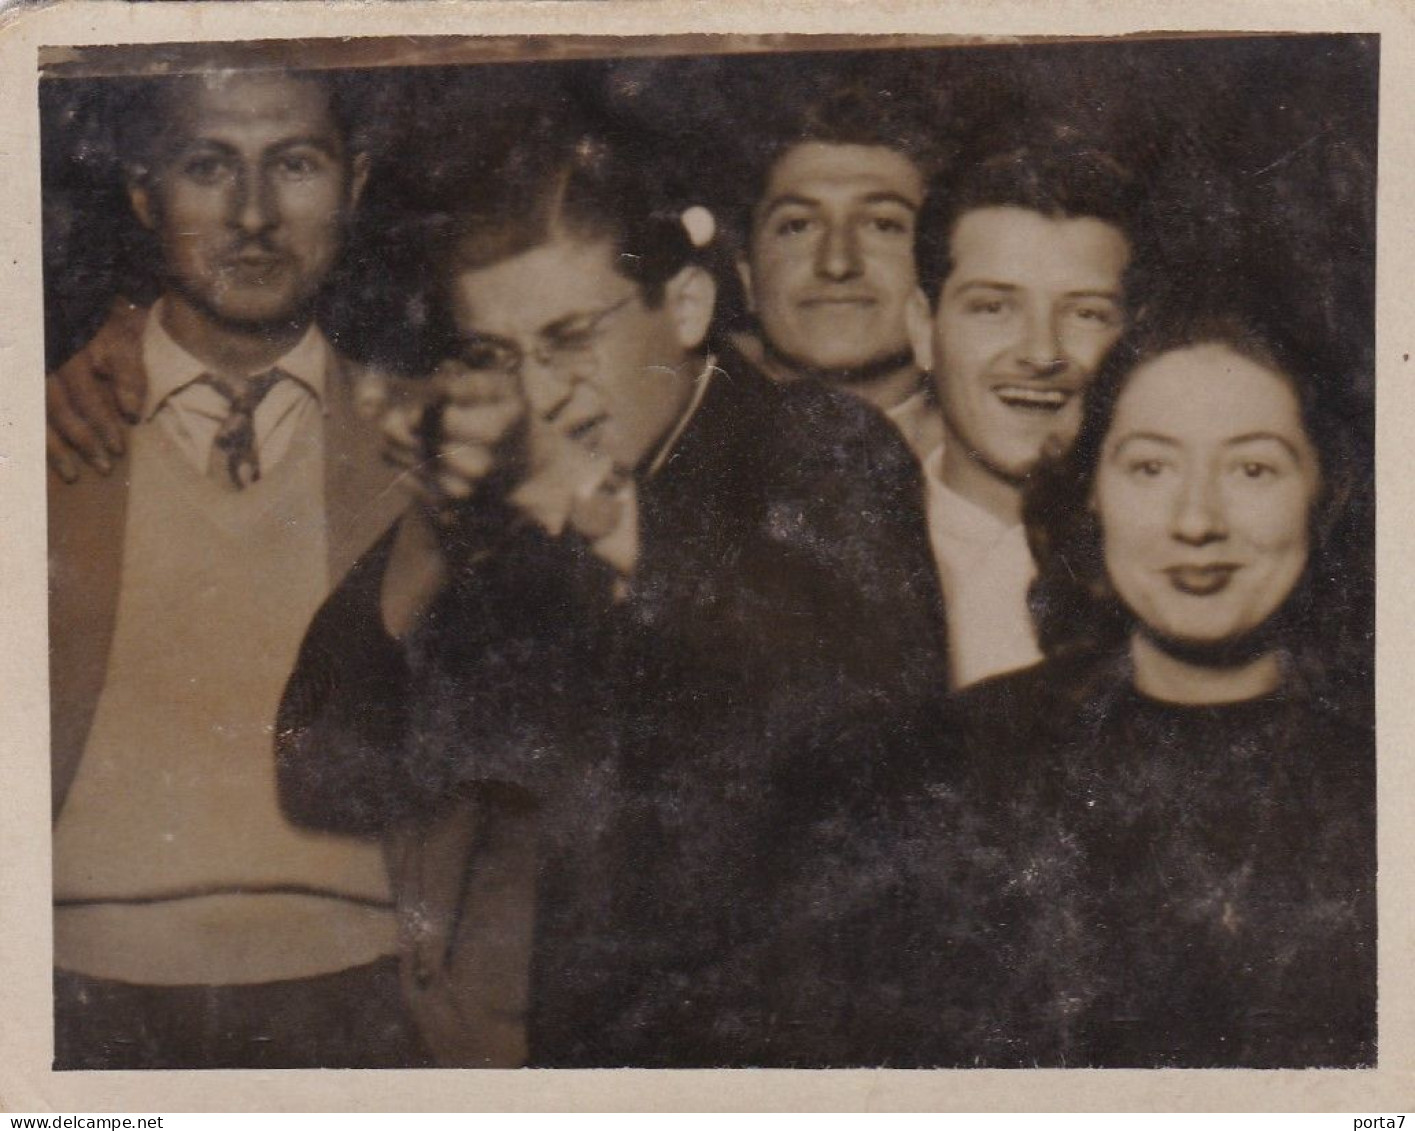 LUNA PARK TIRO A SEGNO - FOTO FLASH - TIR A LA CARABINE  - FOTO  ORIGINALE 1951 - Anonieme Personen